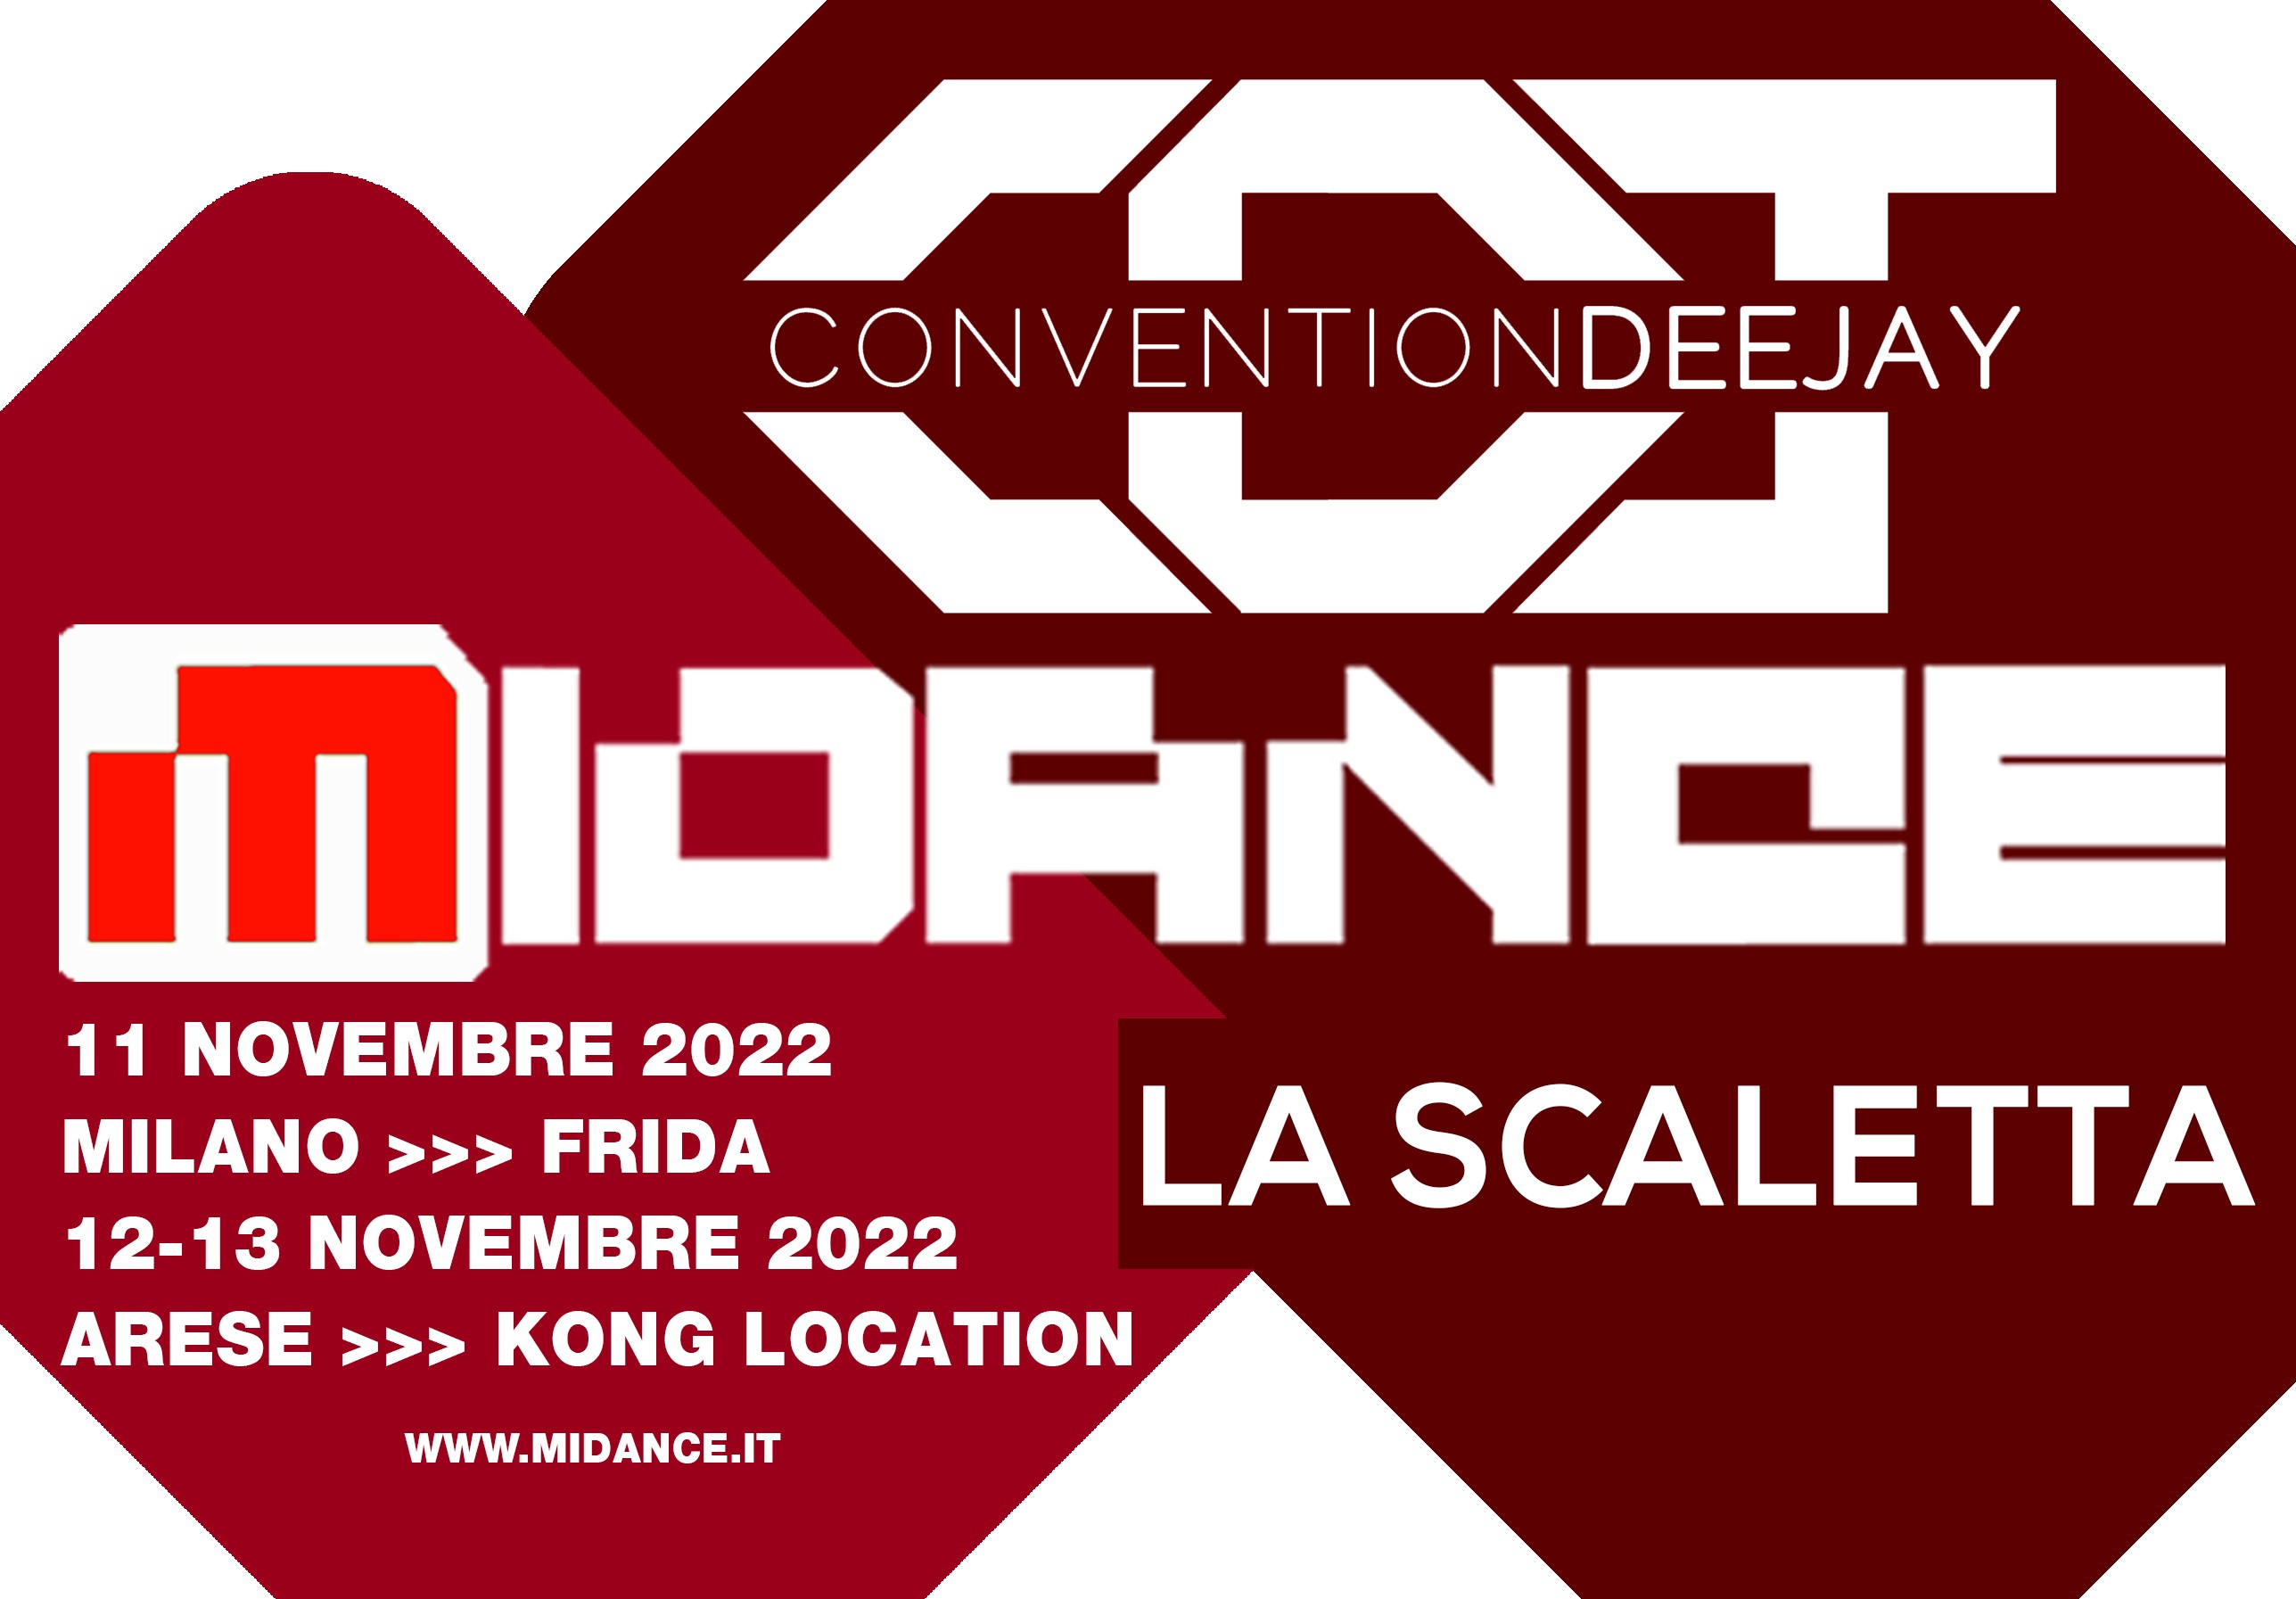 Midance e Convention Deejay 2022, la scaletta